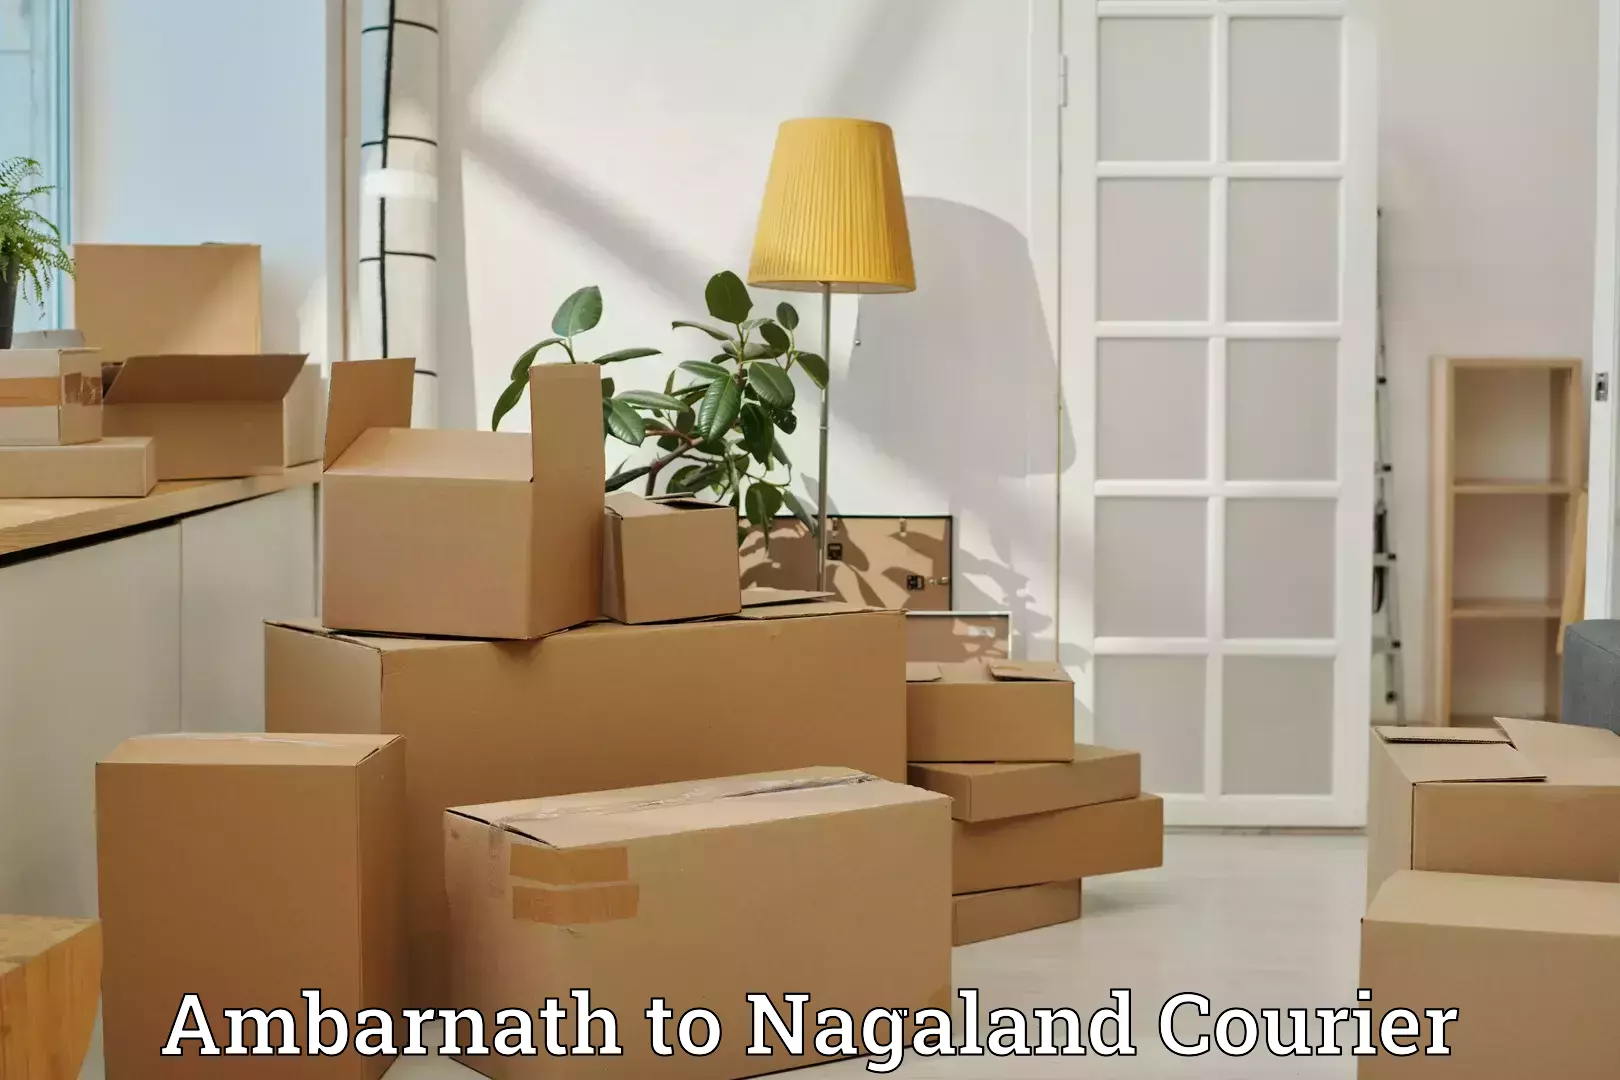 Baggage shipping experts Ambarnath to Nagaland